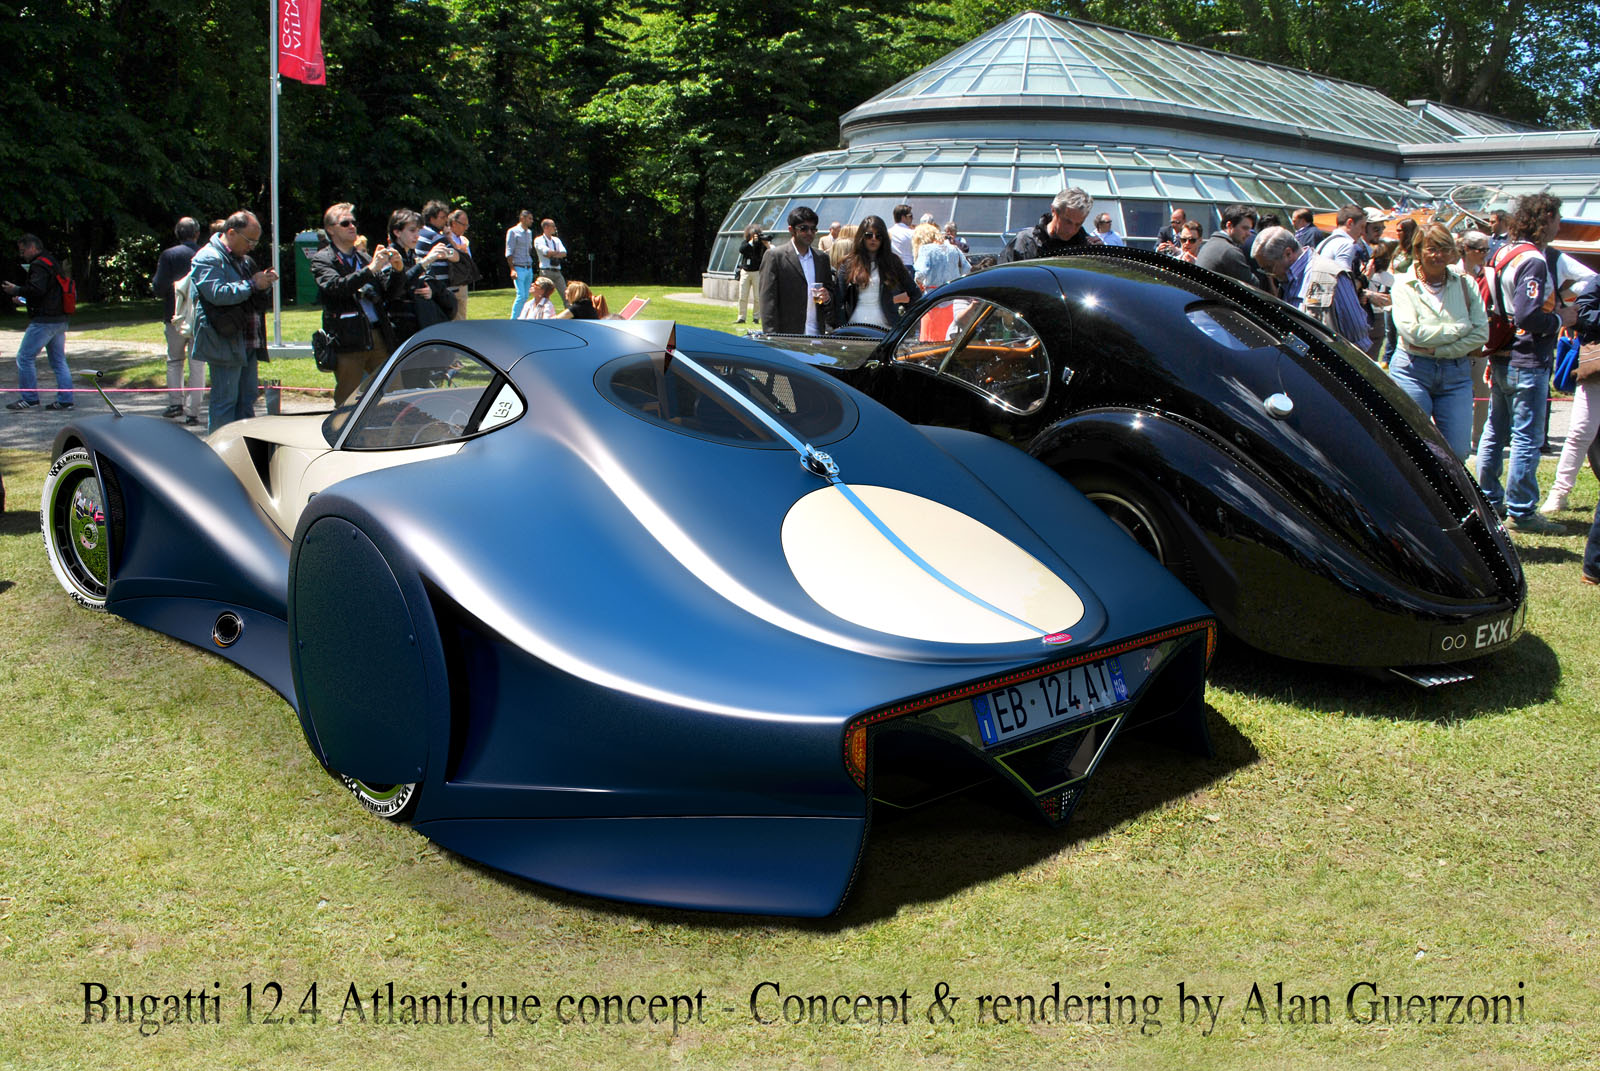 Bugatti 12.4 Atlantique Grand Sport Concept Backgrounds, Compatible - PC, Mobile, Gadgets| 1600x1071 px